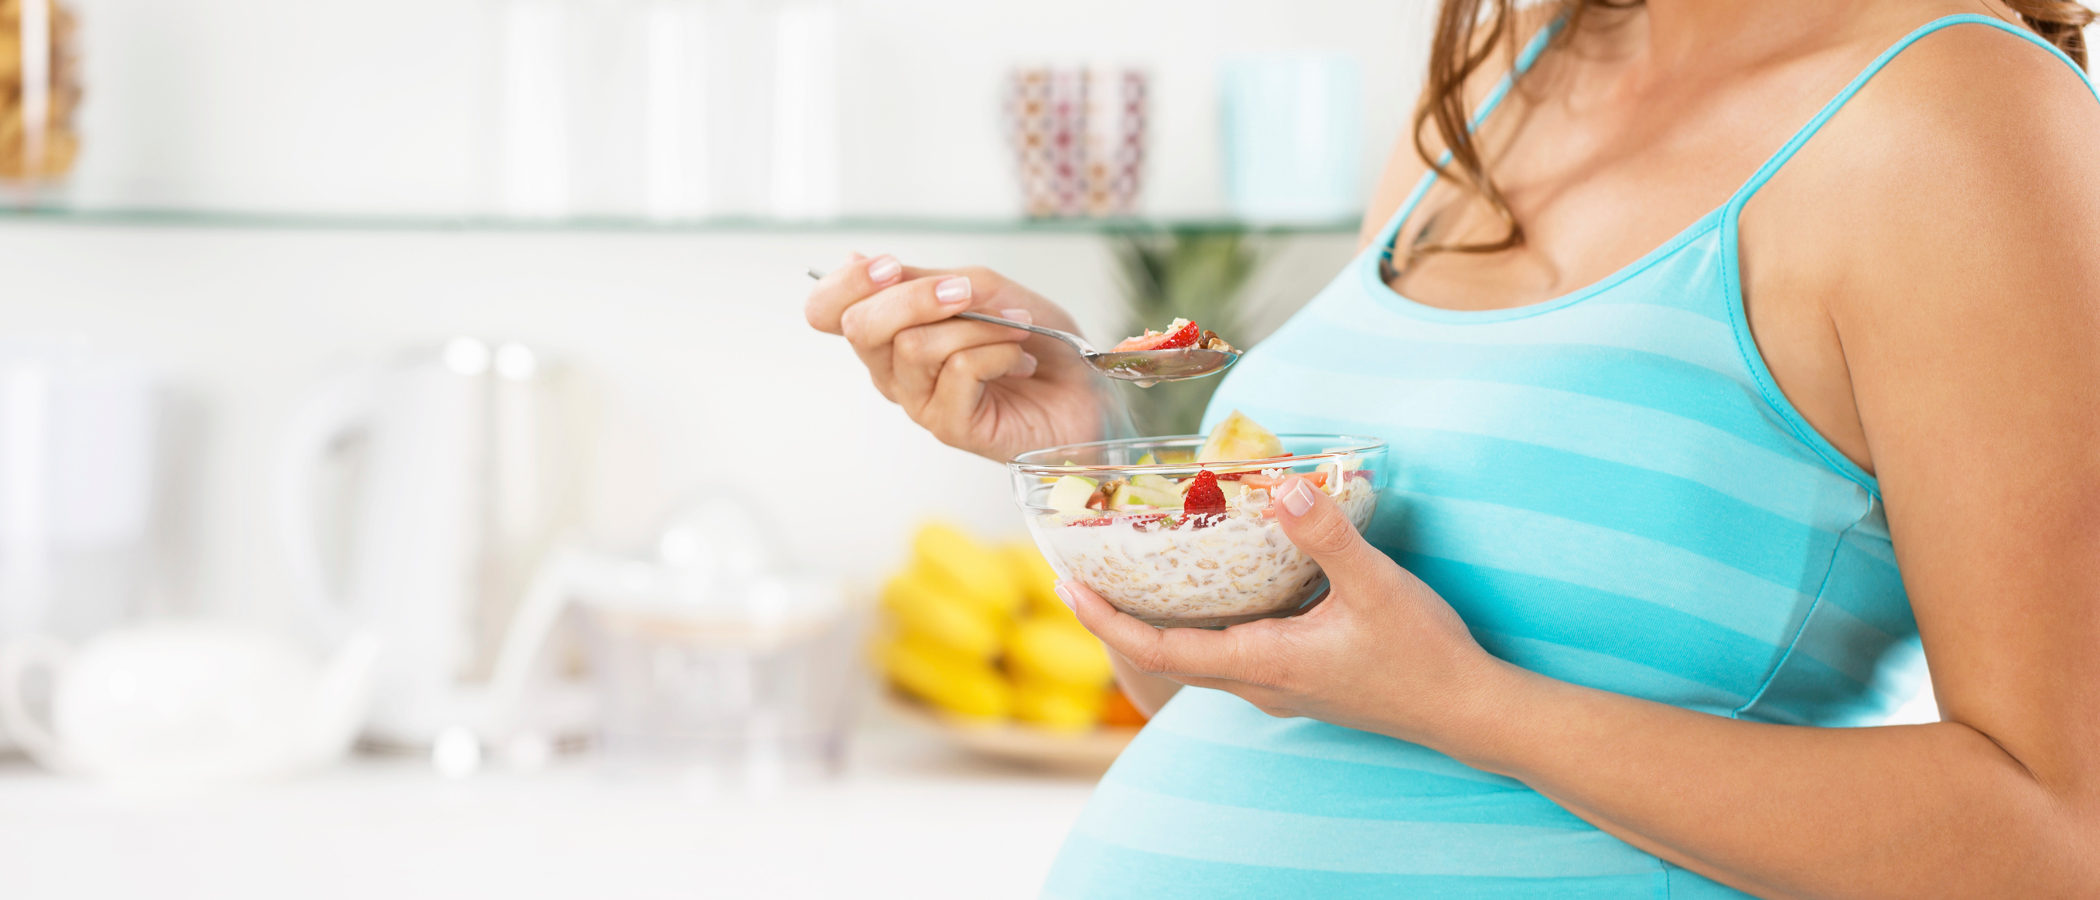 Recomendaciones sobre los suplementos vitamínicos en embarazadas